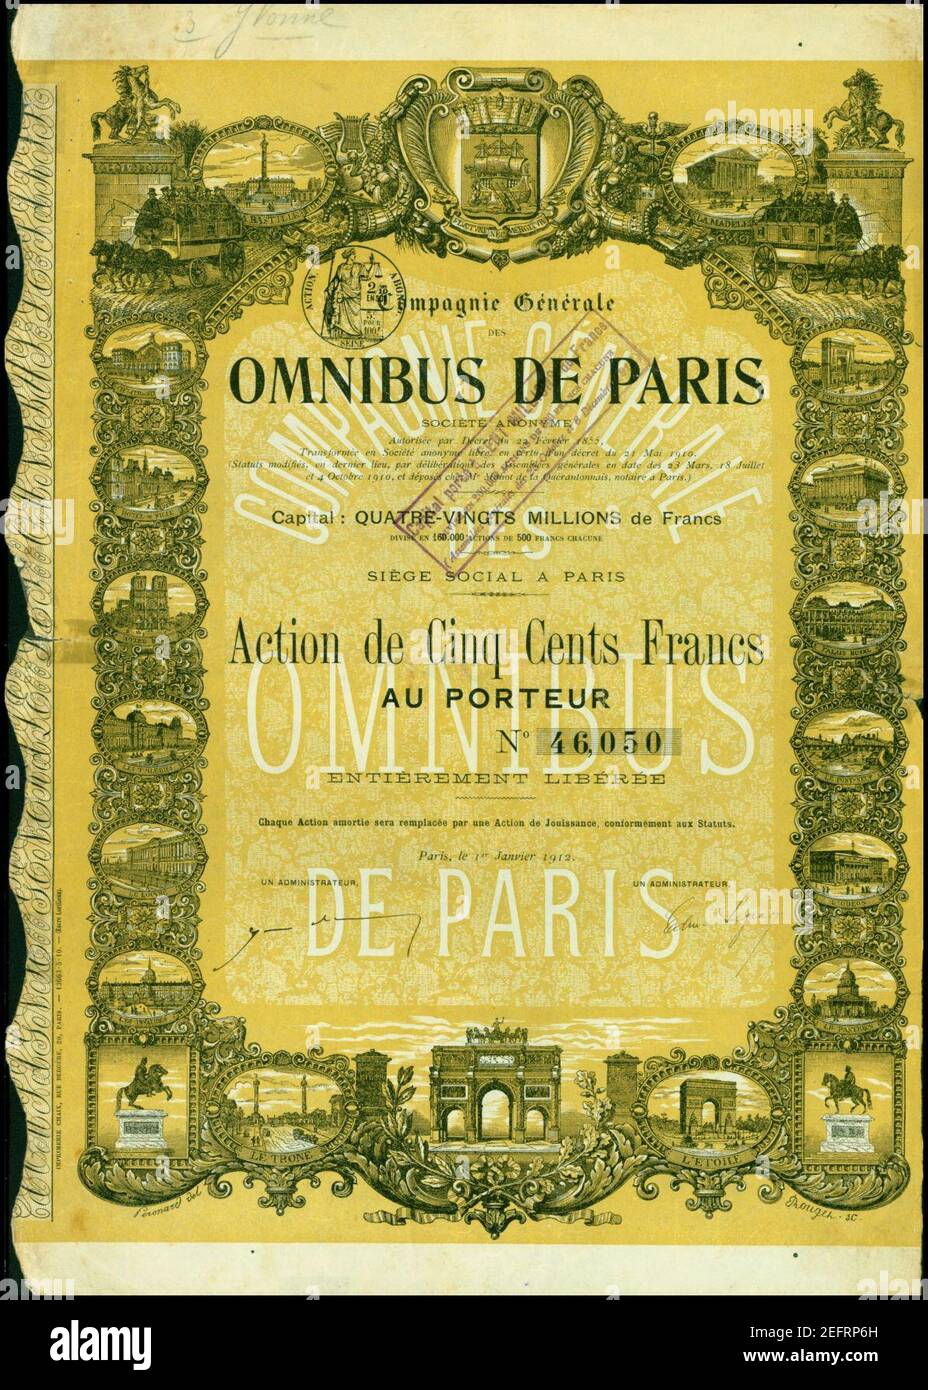 Omnibus de Paris 1912. Stock Photo